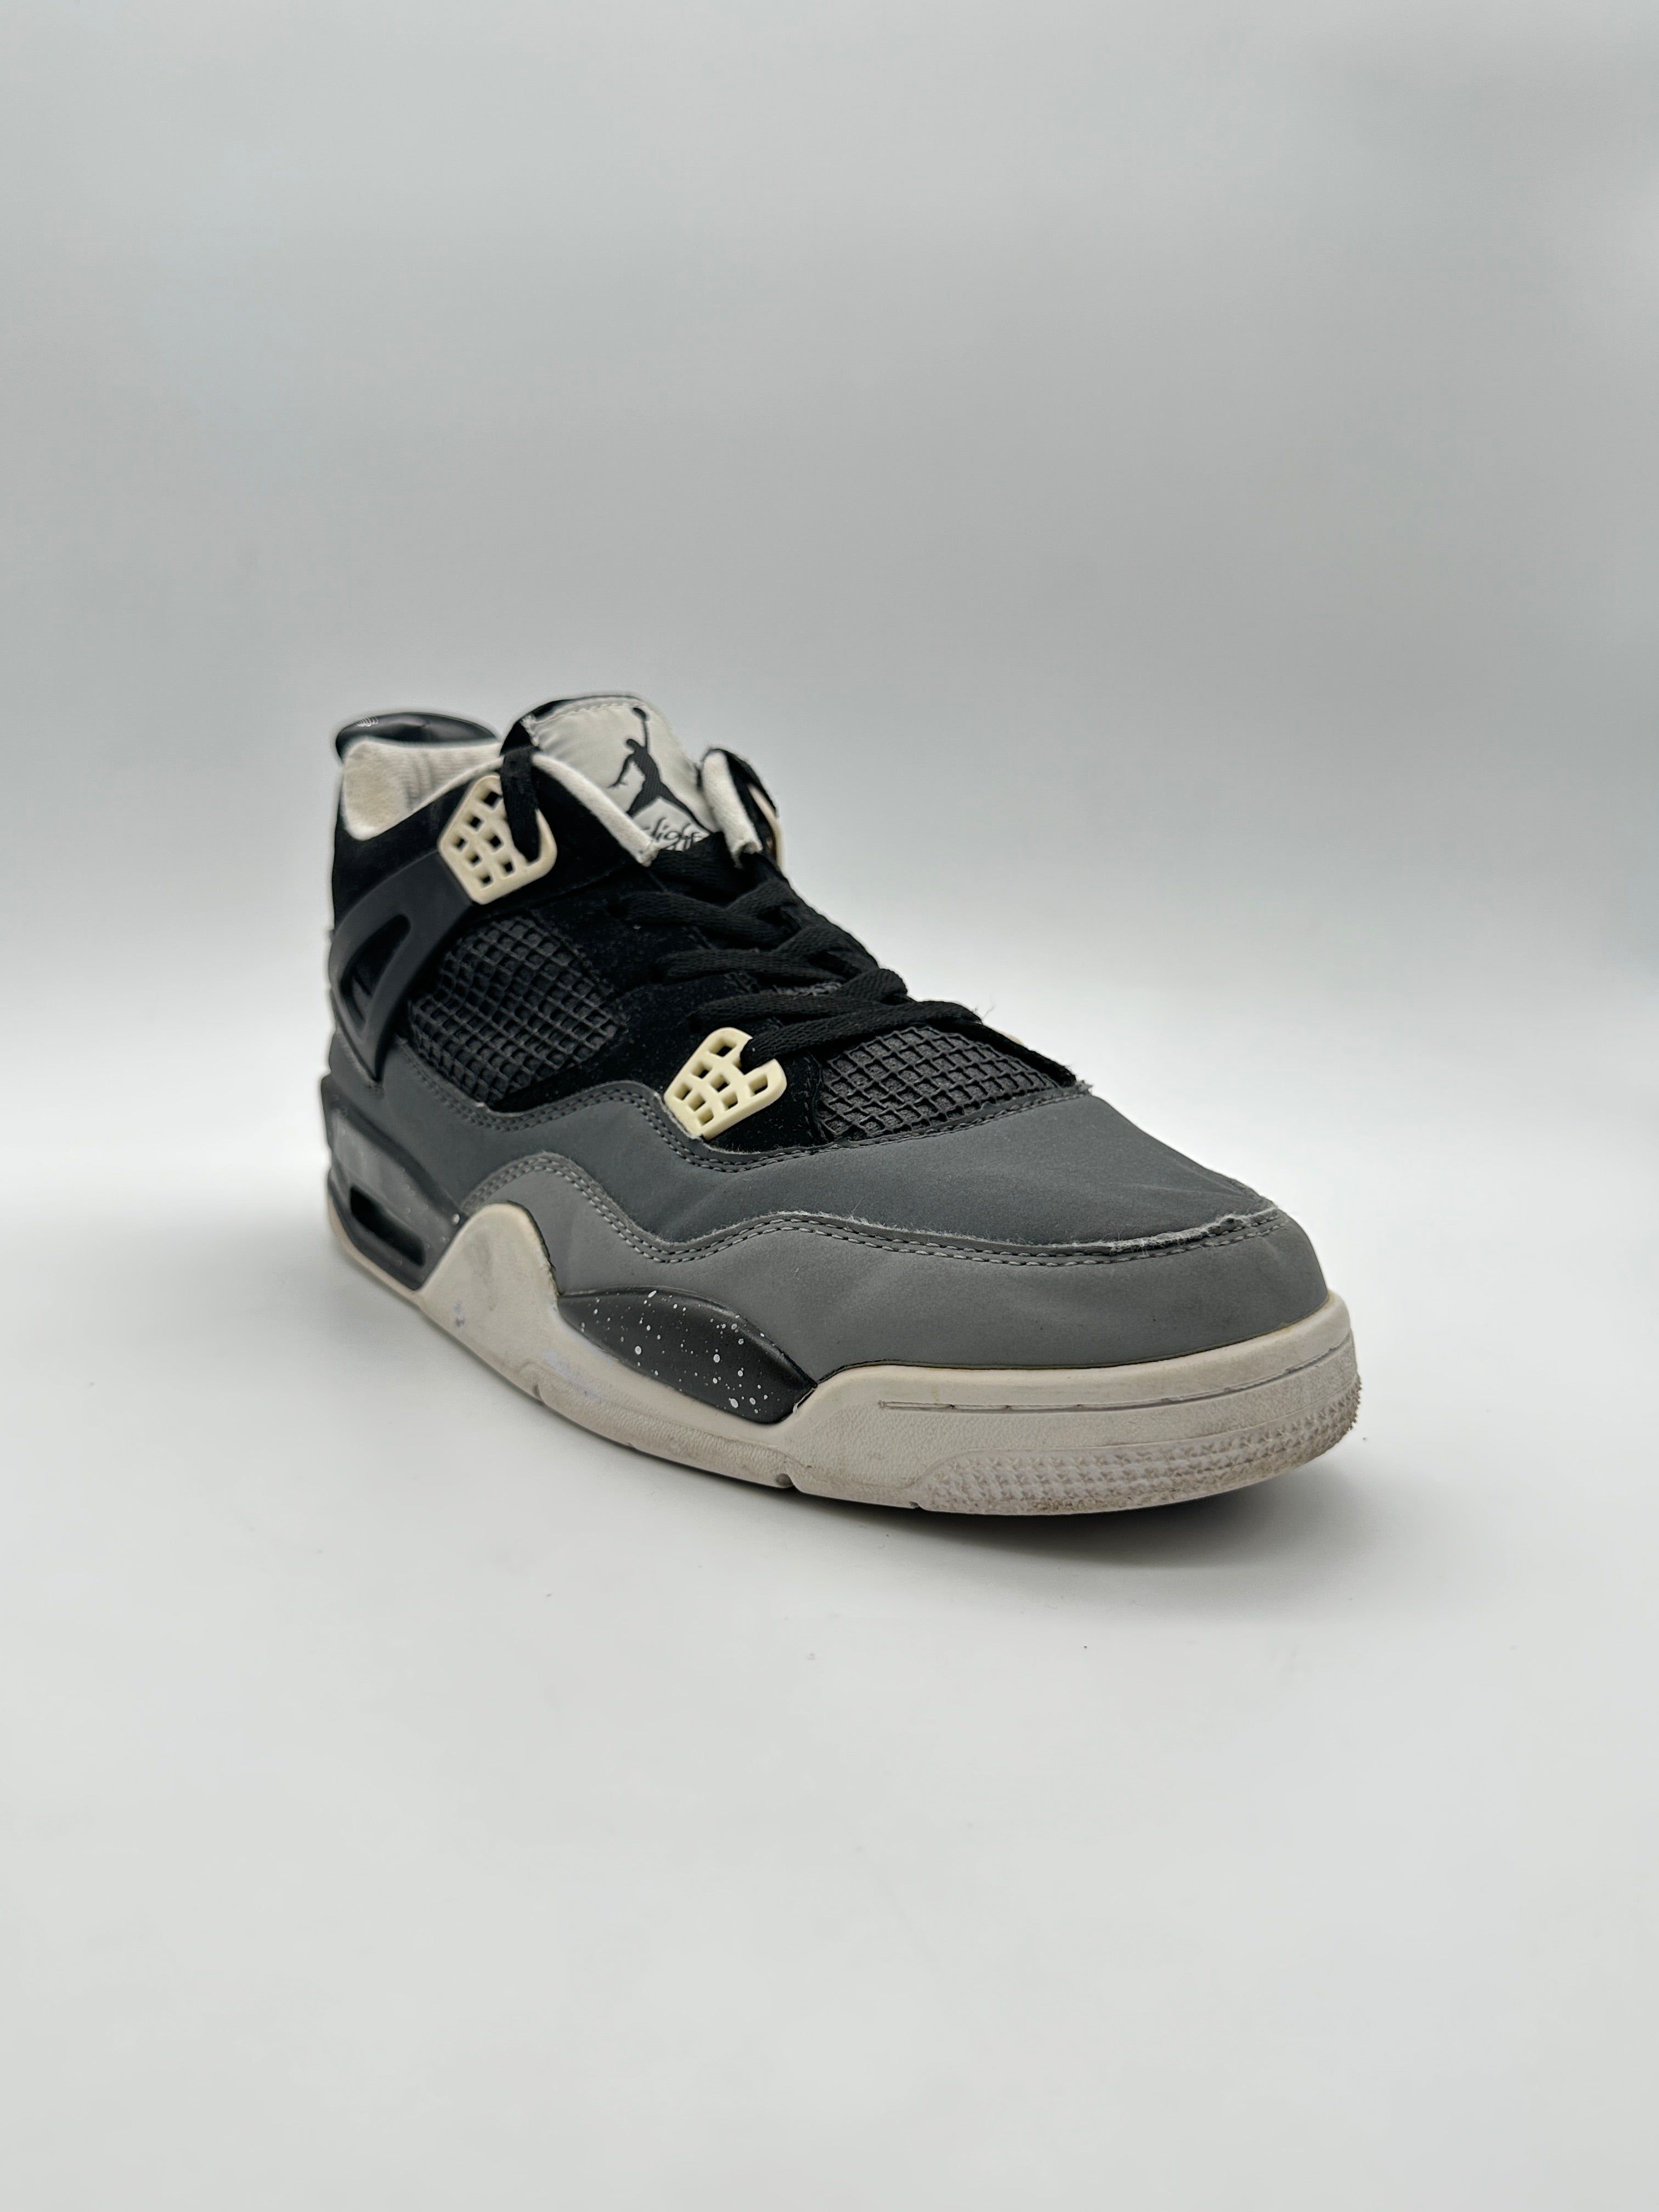 Mid Air Jordan Sneakers